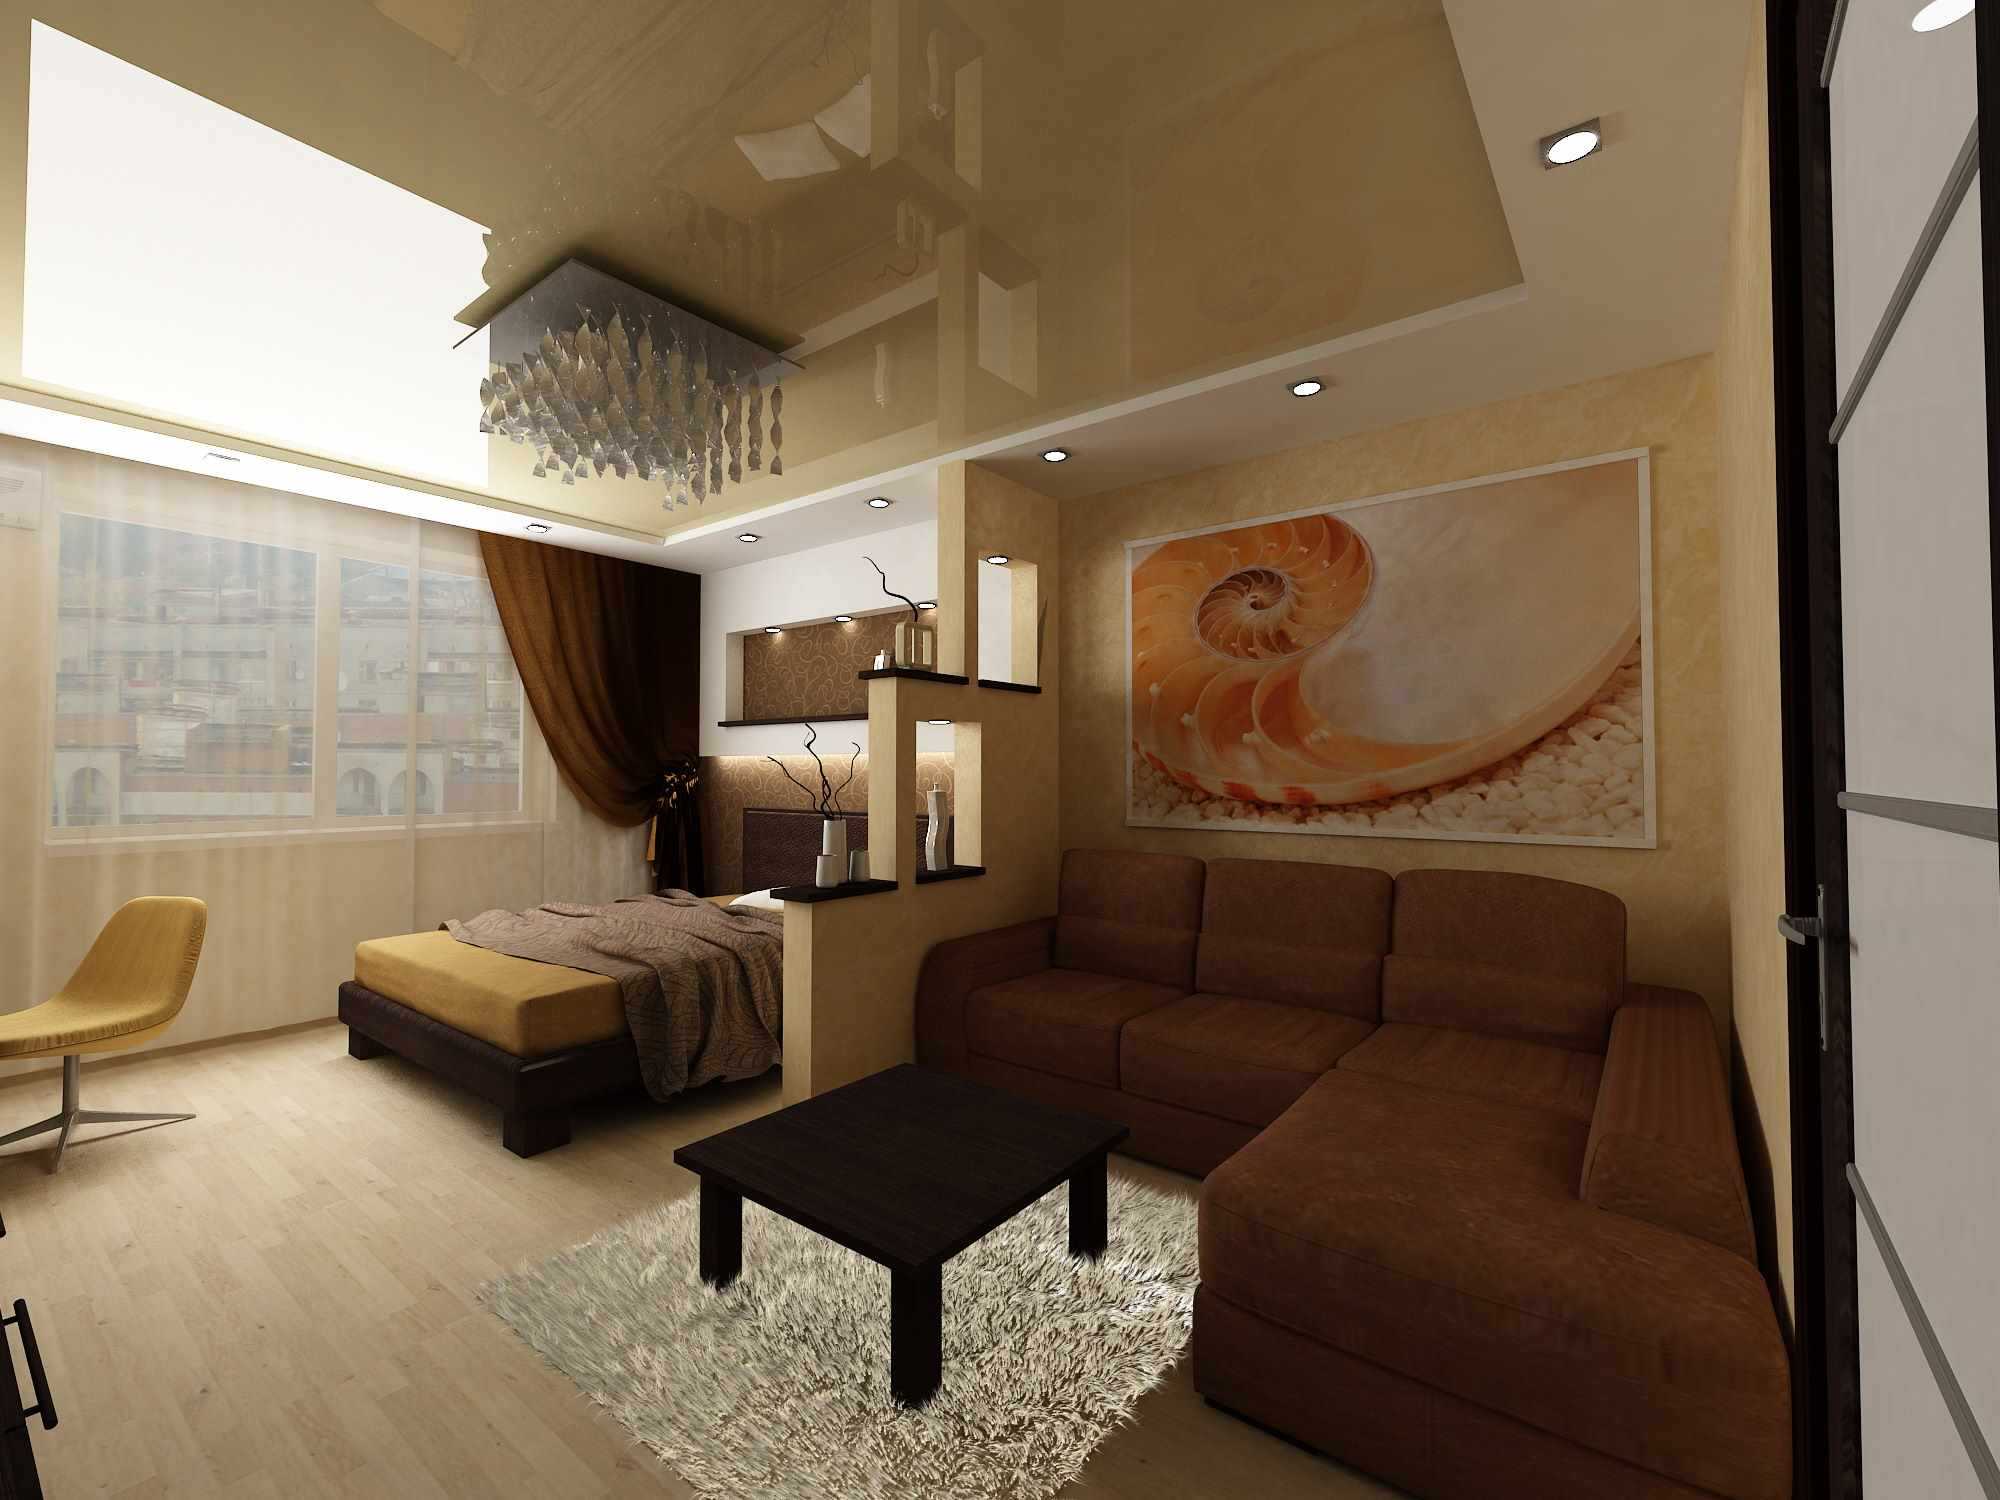 Дизайн спальни 5 на 5 особенности оформления интерьера больших комнат Вариации стилей классика, современный, минимализм Креативные цветовые решения Как обставить комнату 25 квадратных метров, подбор мебели